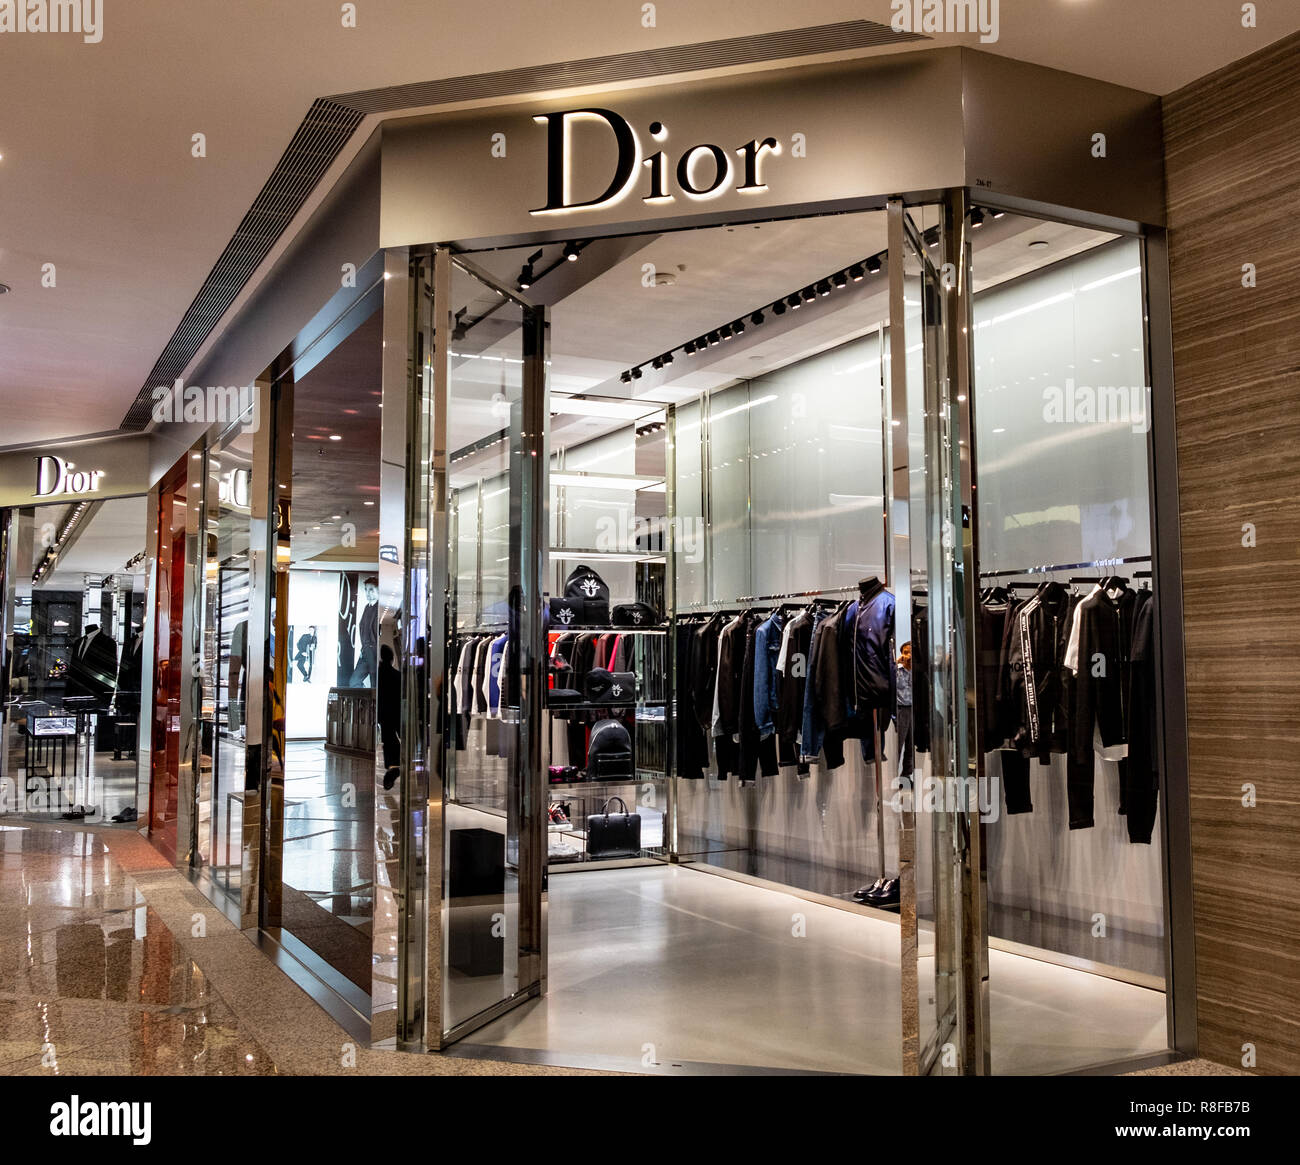 Hong Kong, April 7, 2019: Dior store in Hong Kong. Stock Photo